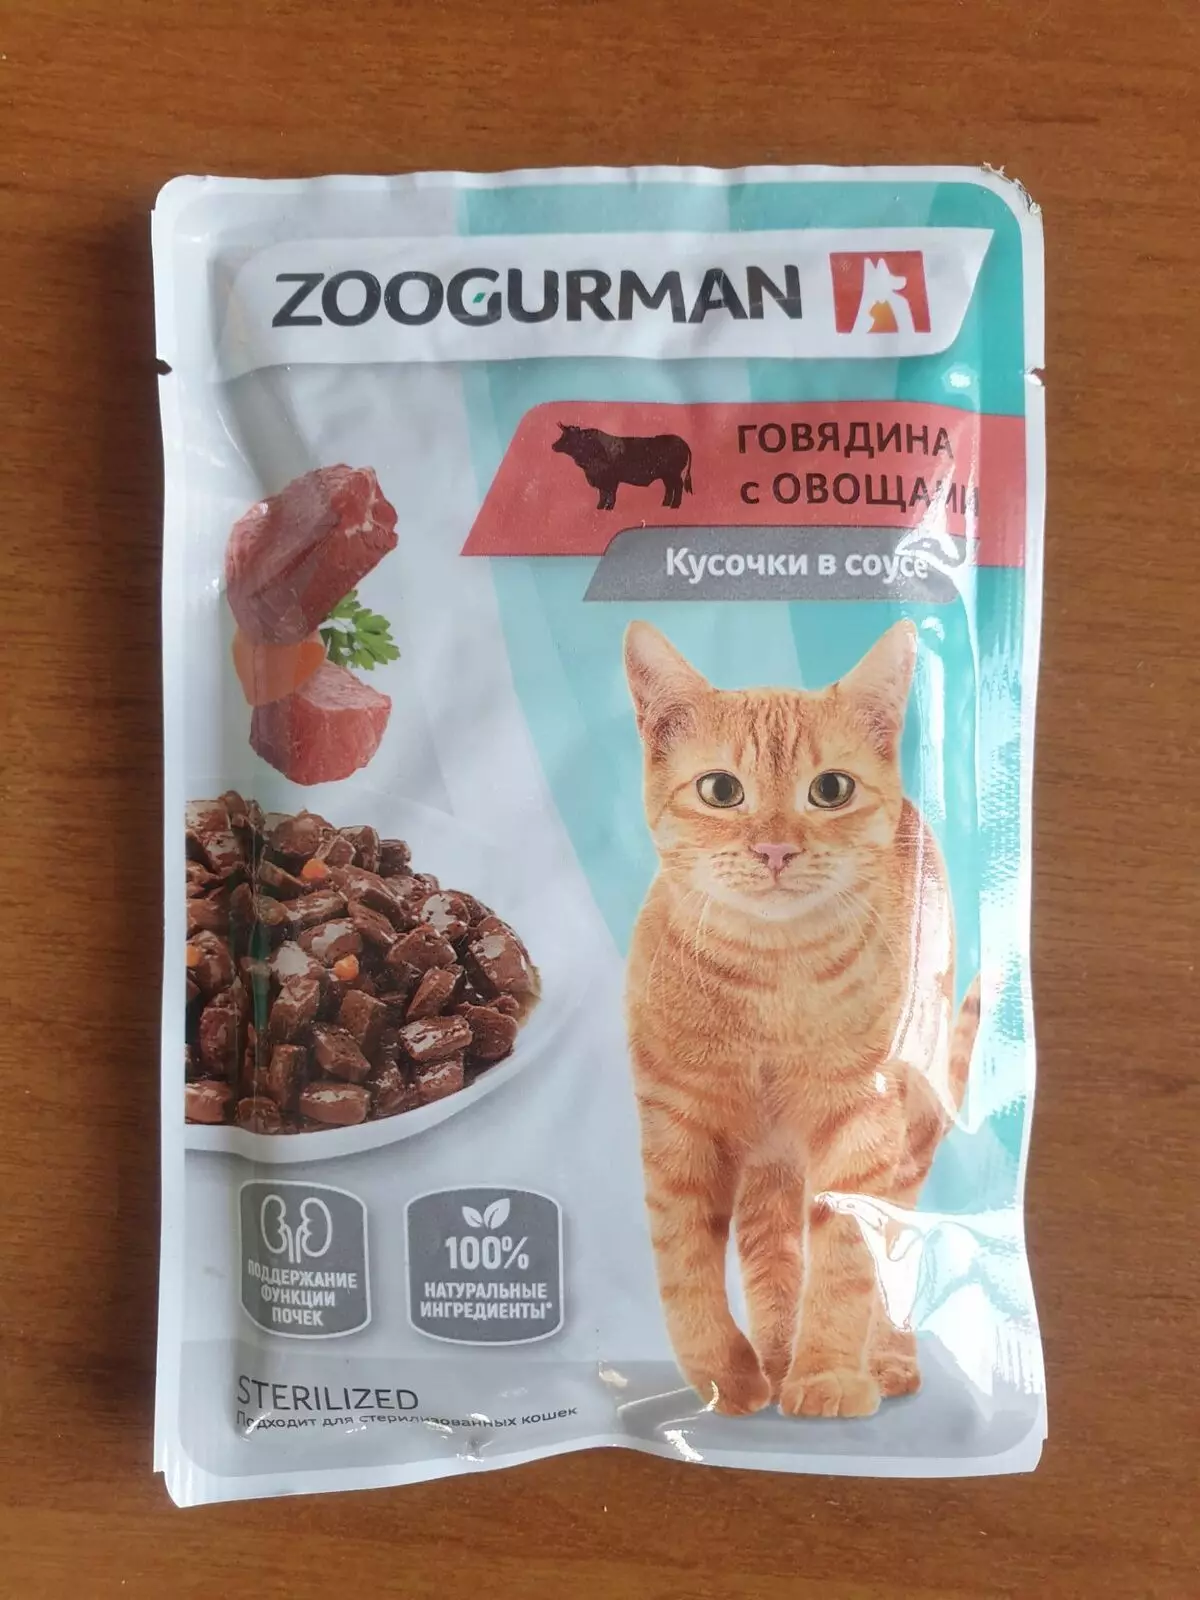 Կատուն կատուների համար «Zoogurman». Չոր եւ խոնավ կերակրման համար ստերիլիզացված կատուների եւ kittens- ի համար, դասի ամբողջականության անասնակերի կազմը: Վերանայման ակնարկներ 22633_13